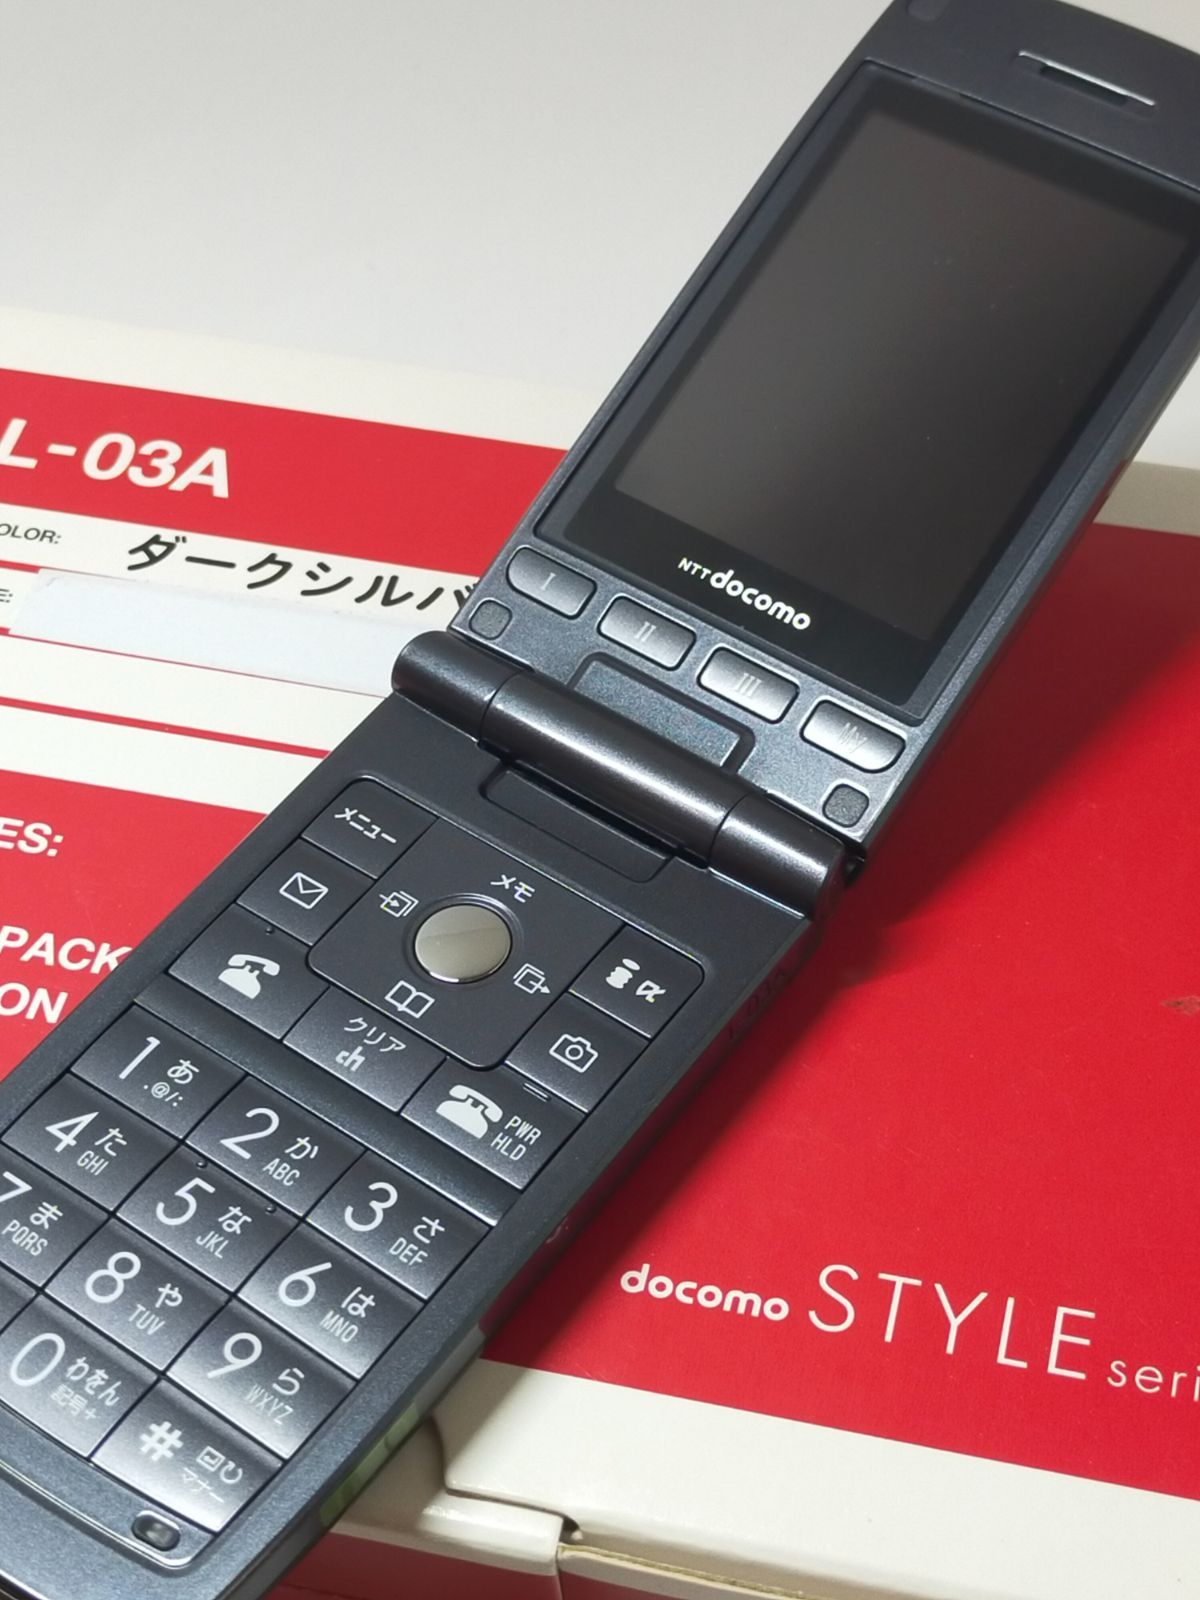 ガラケー docomo STYLE seriesL-03A新品 セット